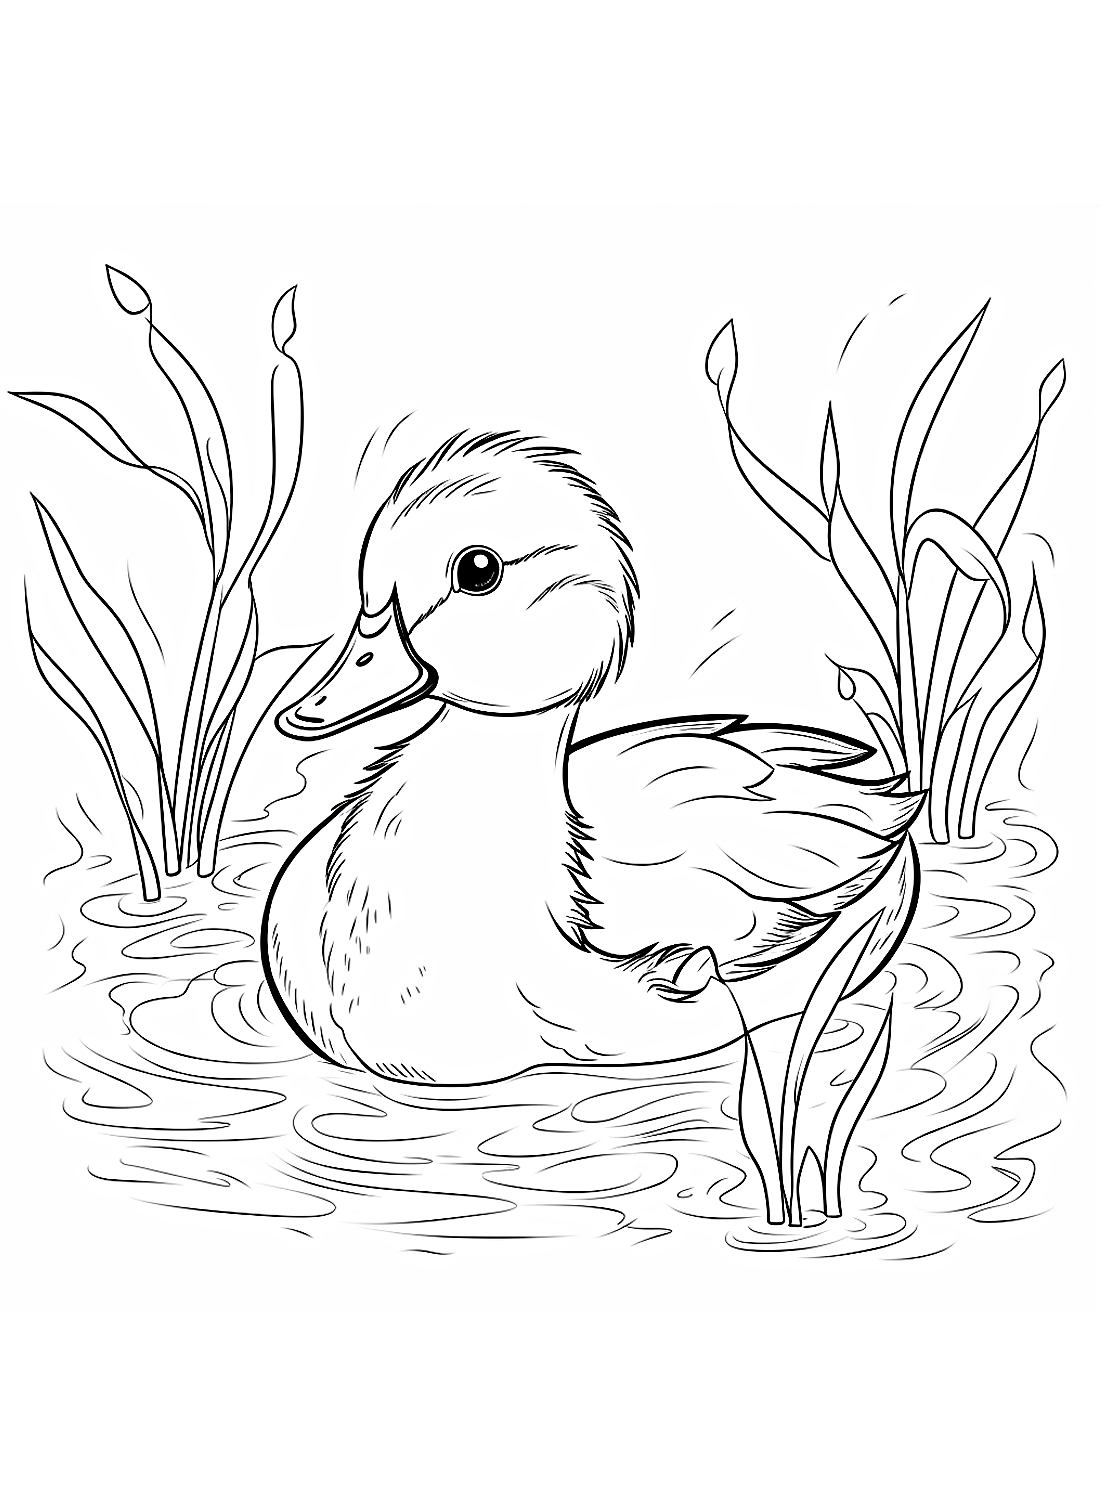 Een zwemmend eendje van Duckling